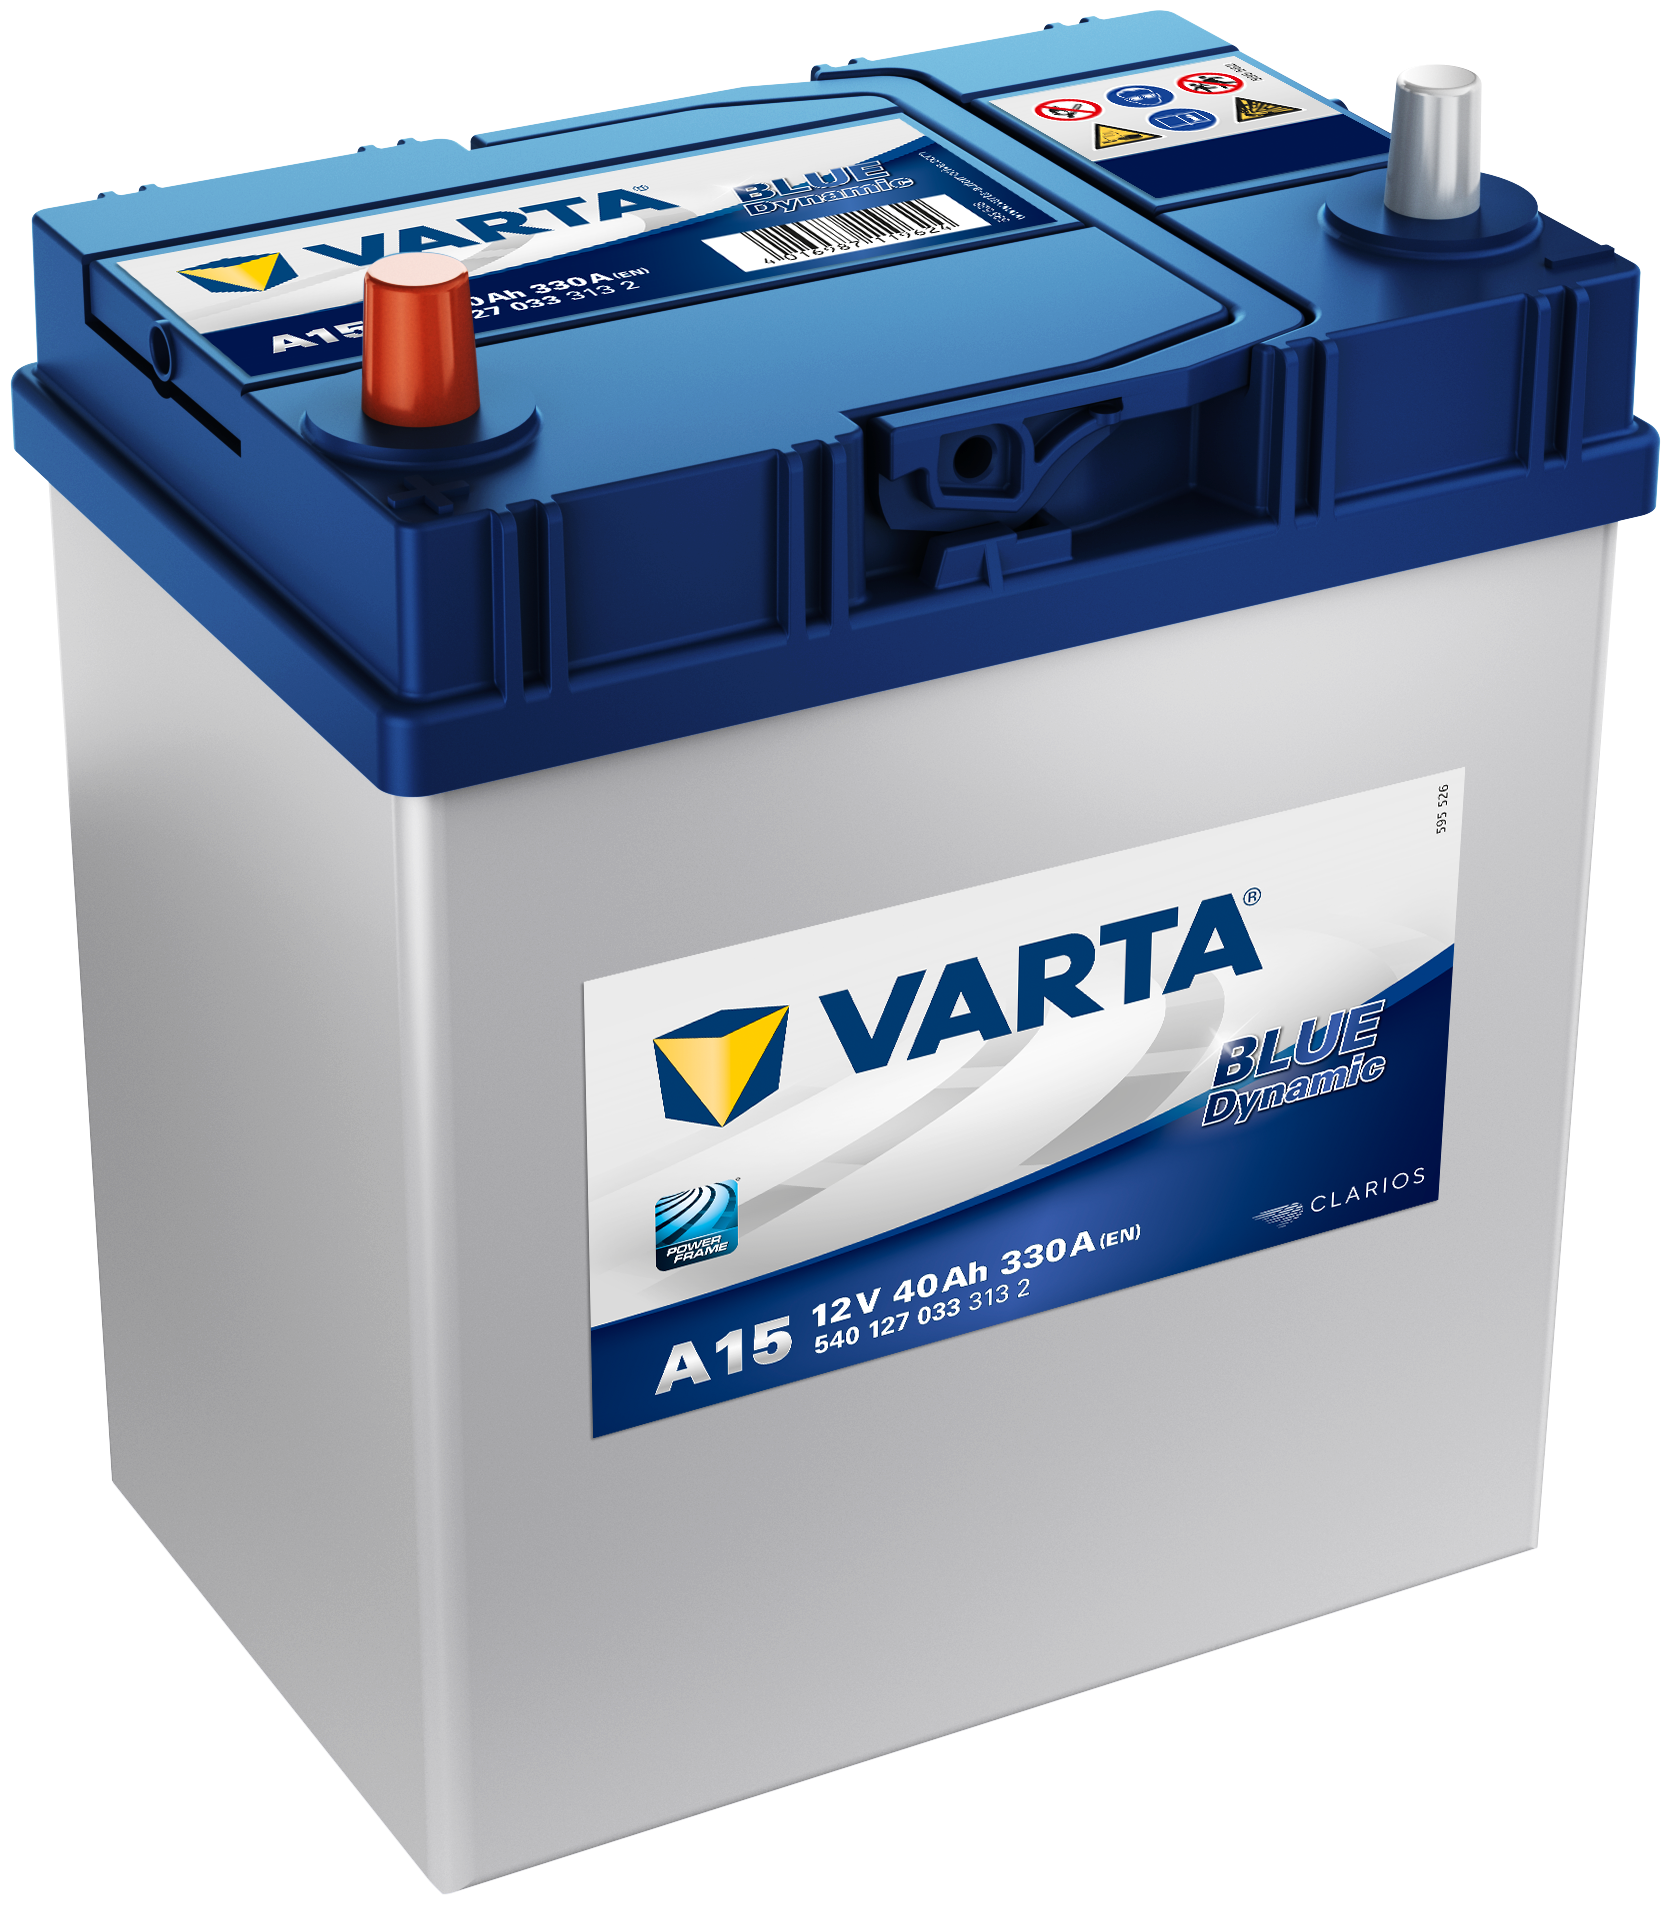 Аккумулятор для спецтехники VARTA Blue Dynamic A15 540 127 033 187х127х227